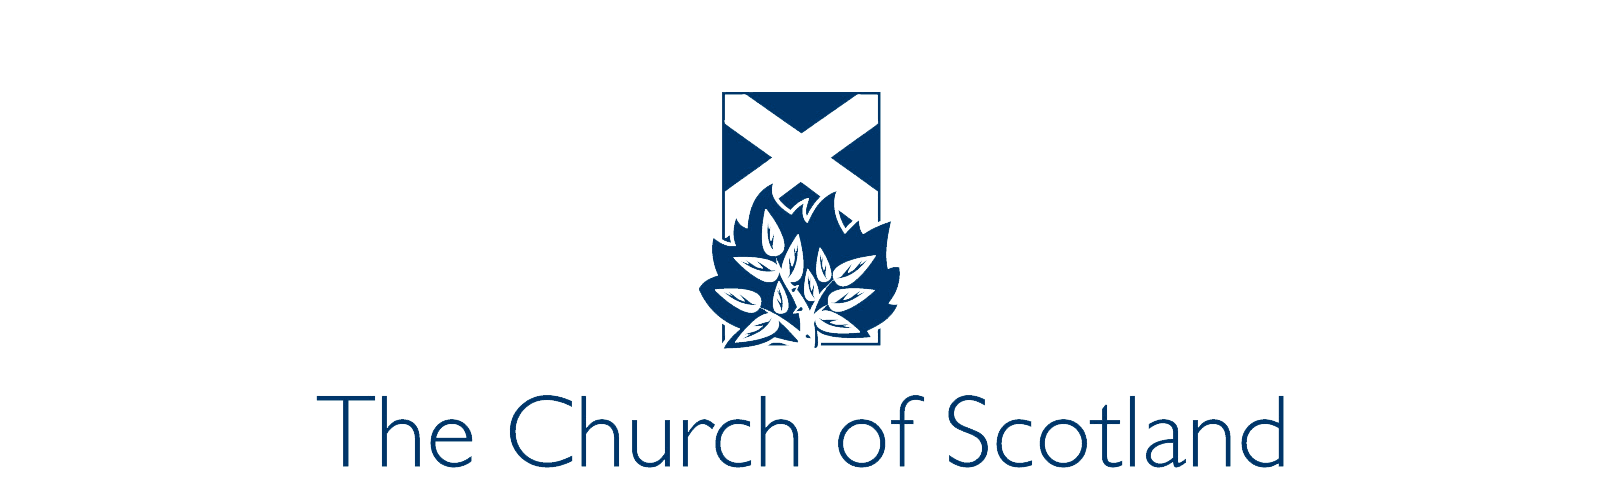 The Church of Scotland logo